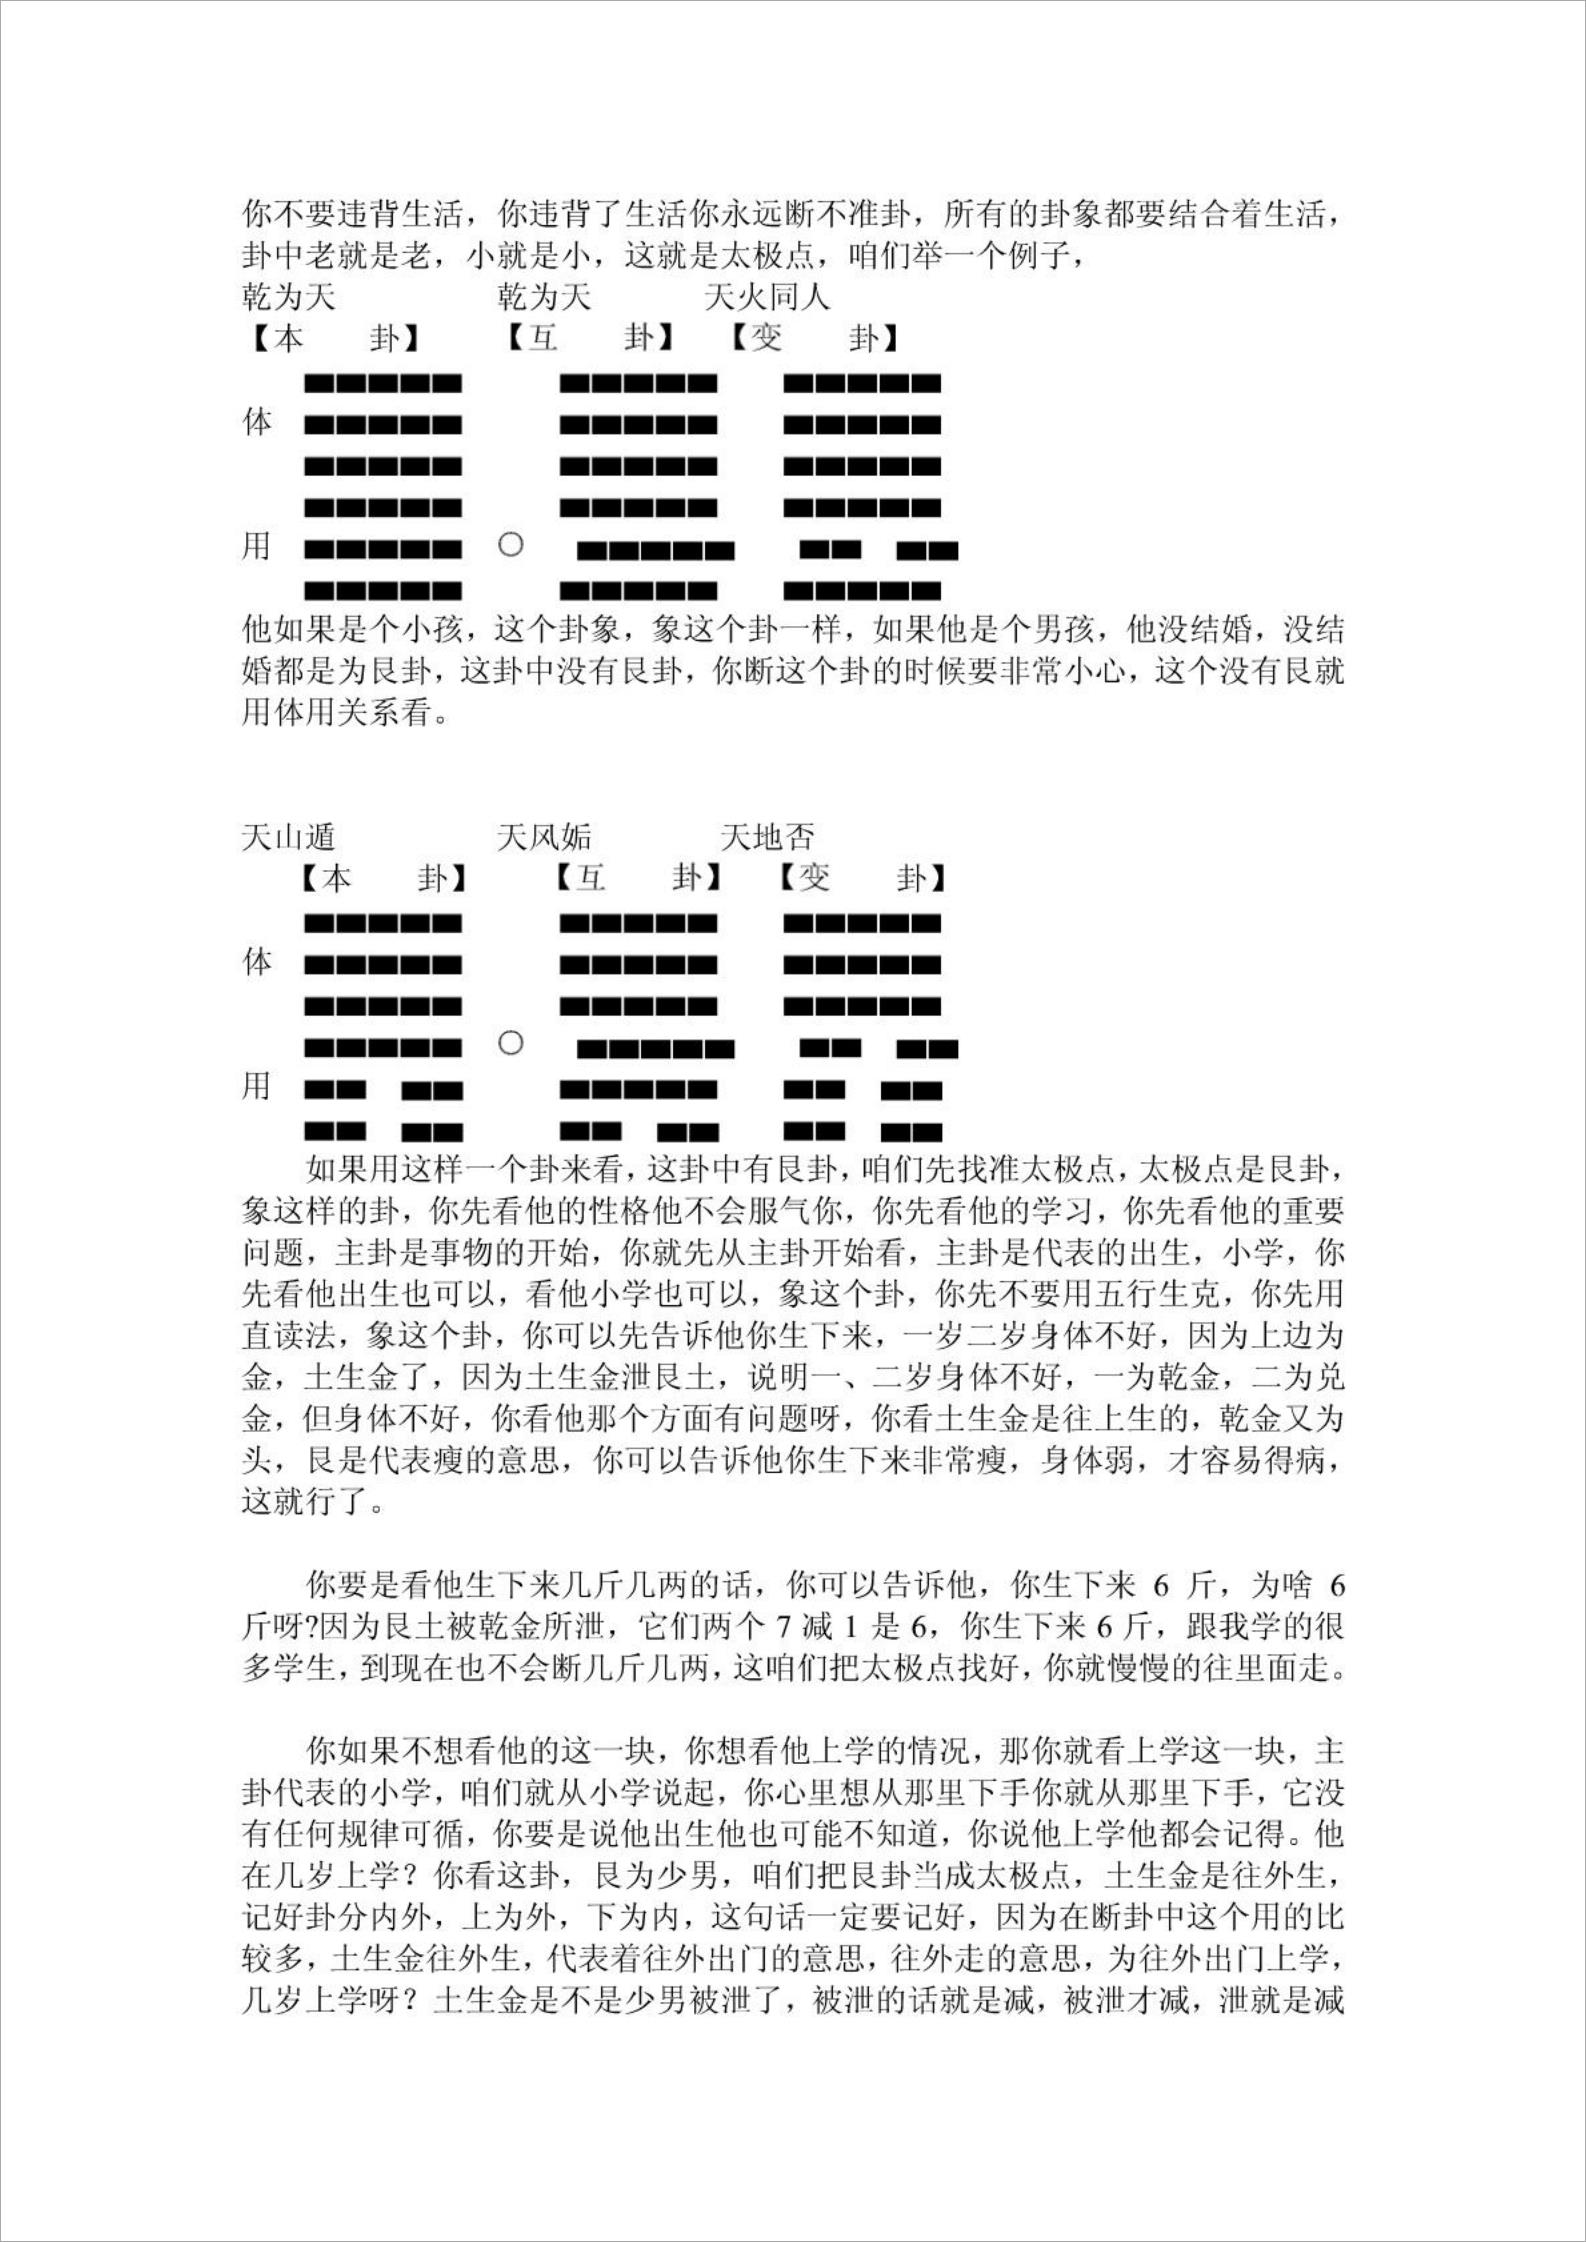 2009年10月韩海军老师讲课整理.pdf